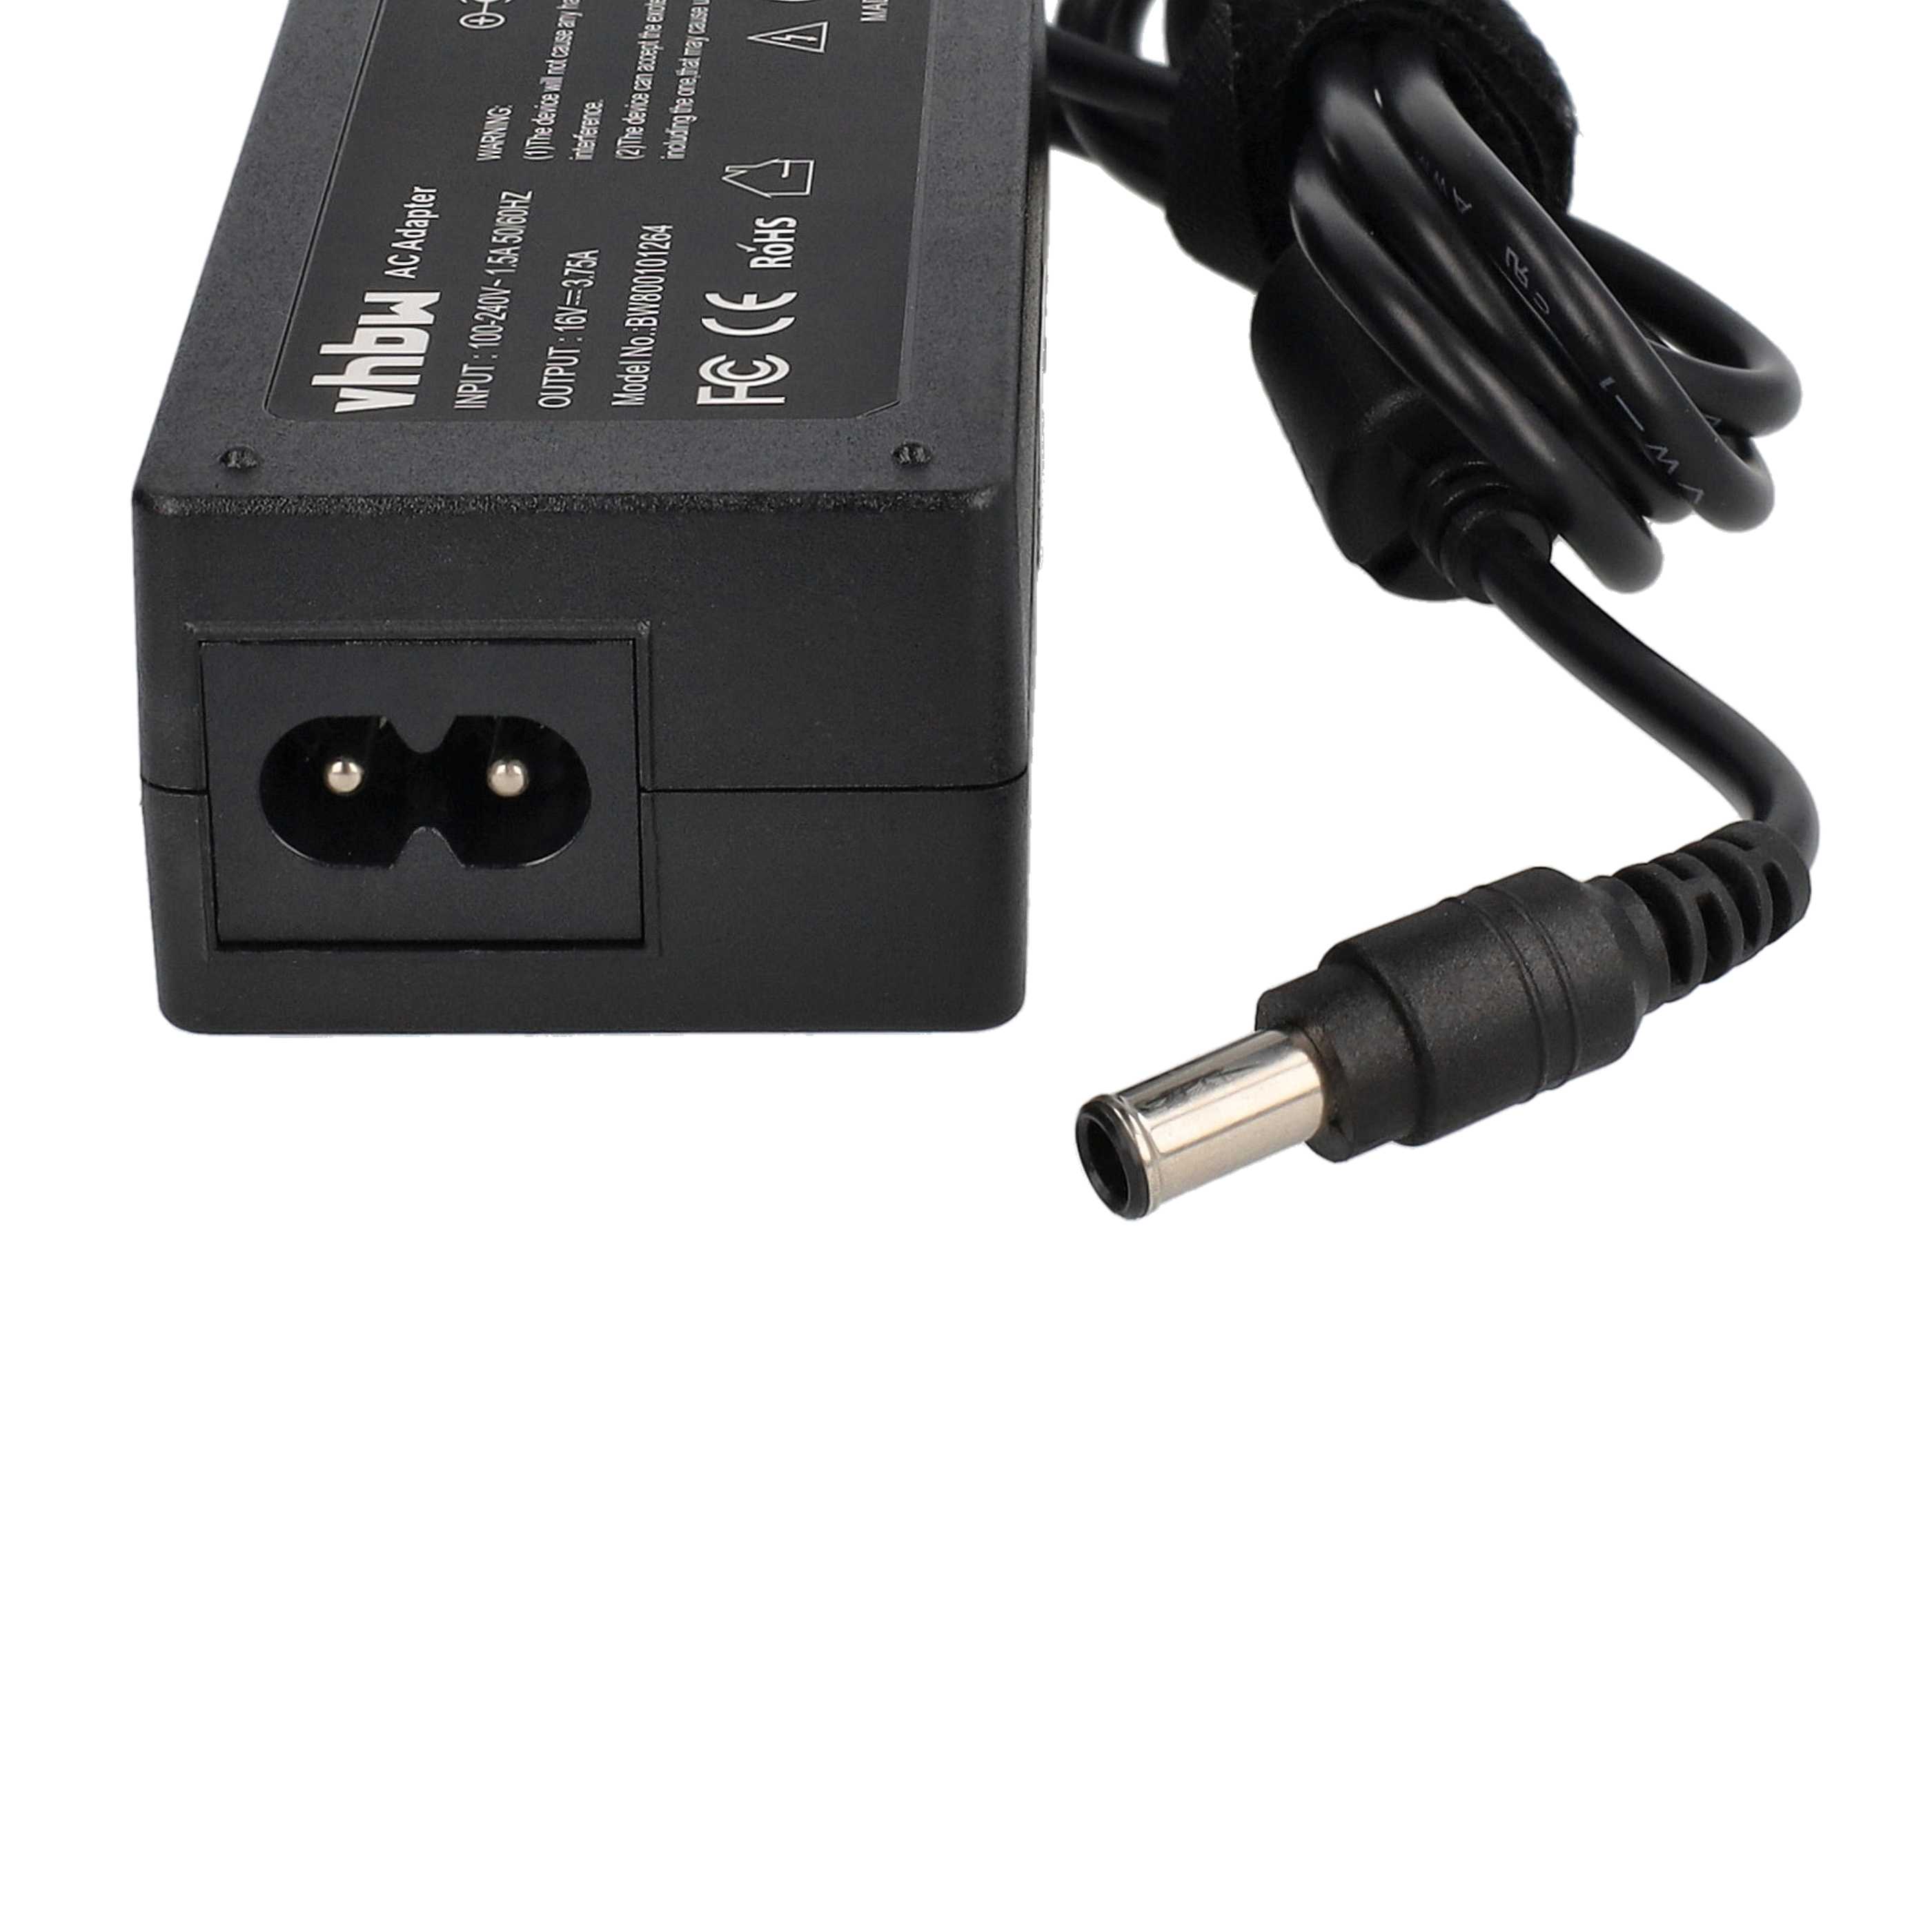 Mains Power Adapter replaces Sony PCGA-AC16V1, PCGA-AC16V3 for PanasonicNotebook etc., 60 W